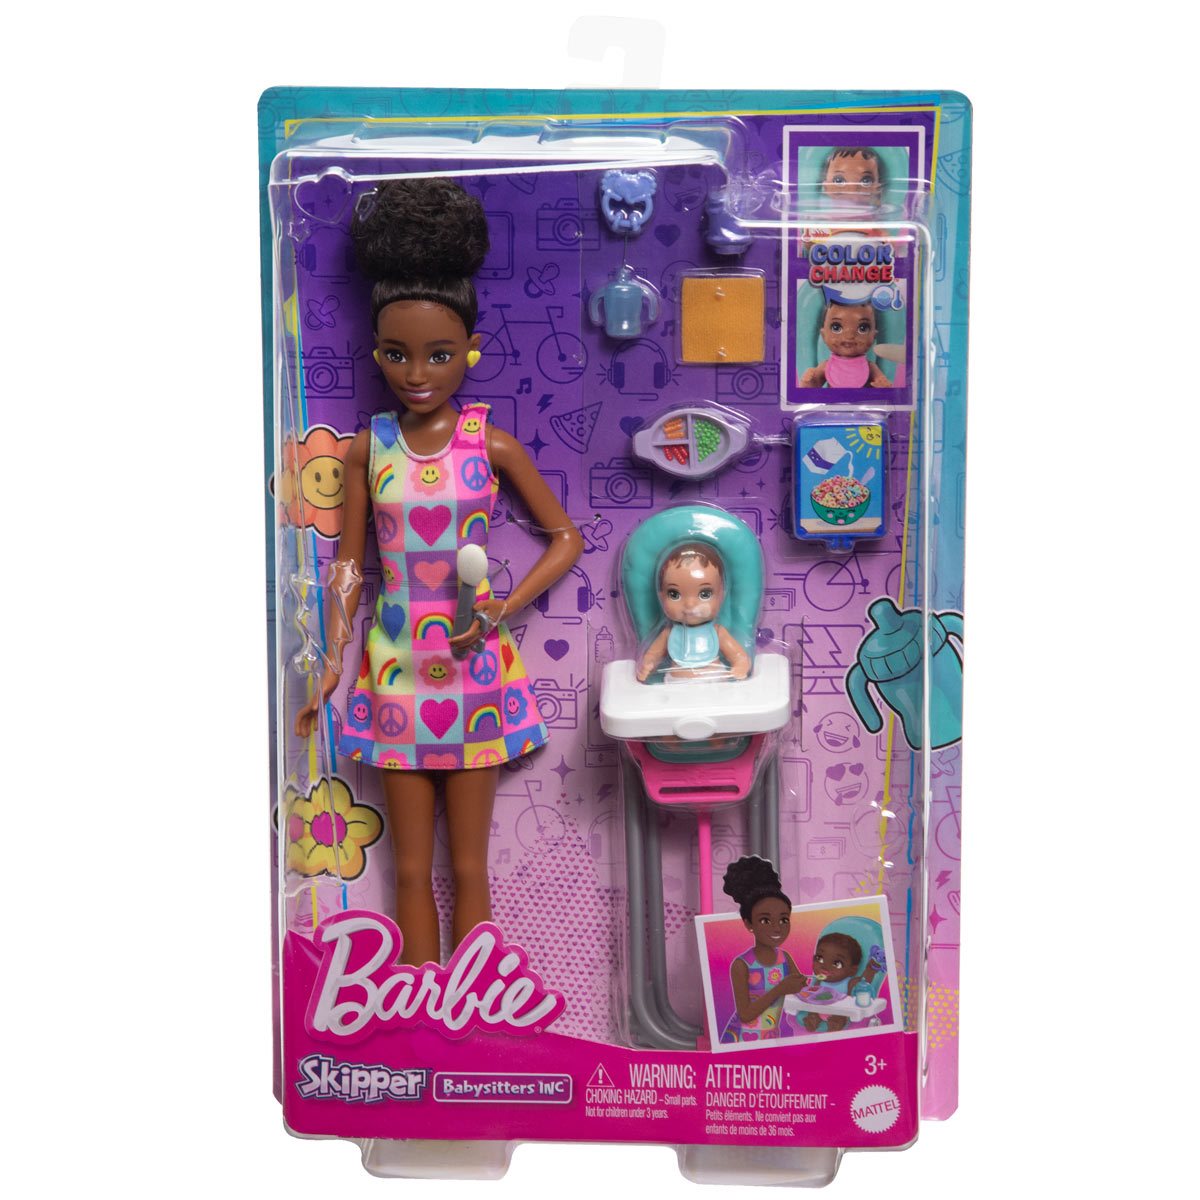 Barbie Skipper Babysitter Dark Hair